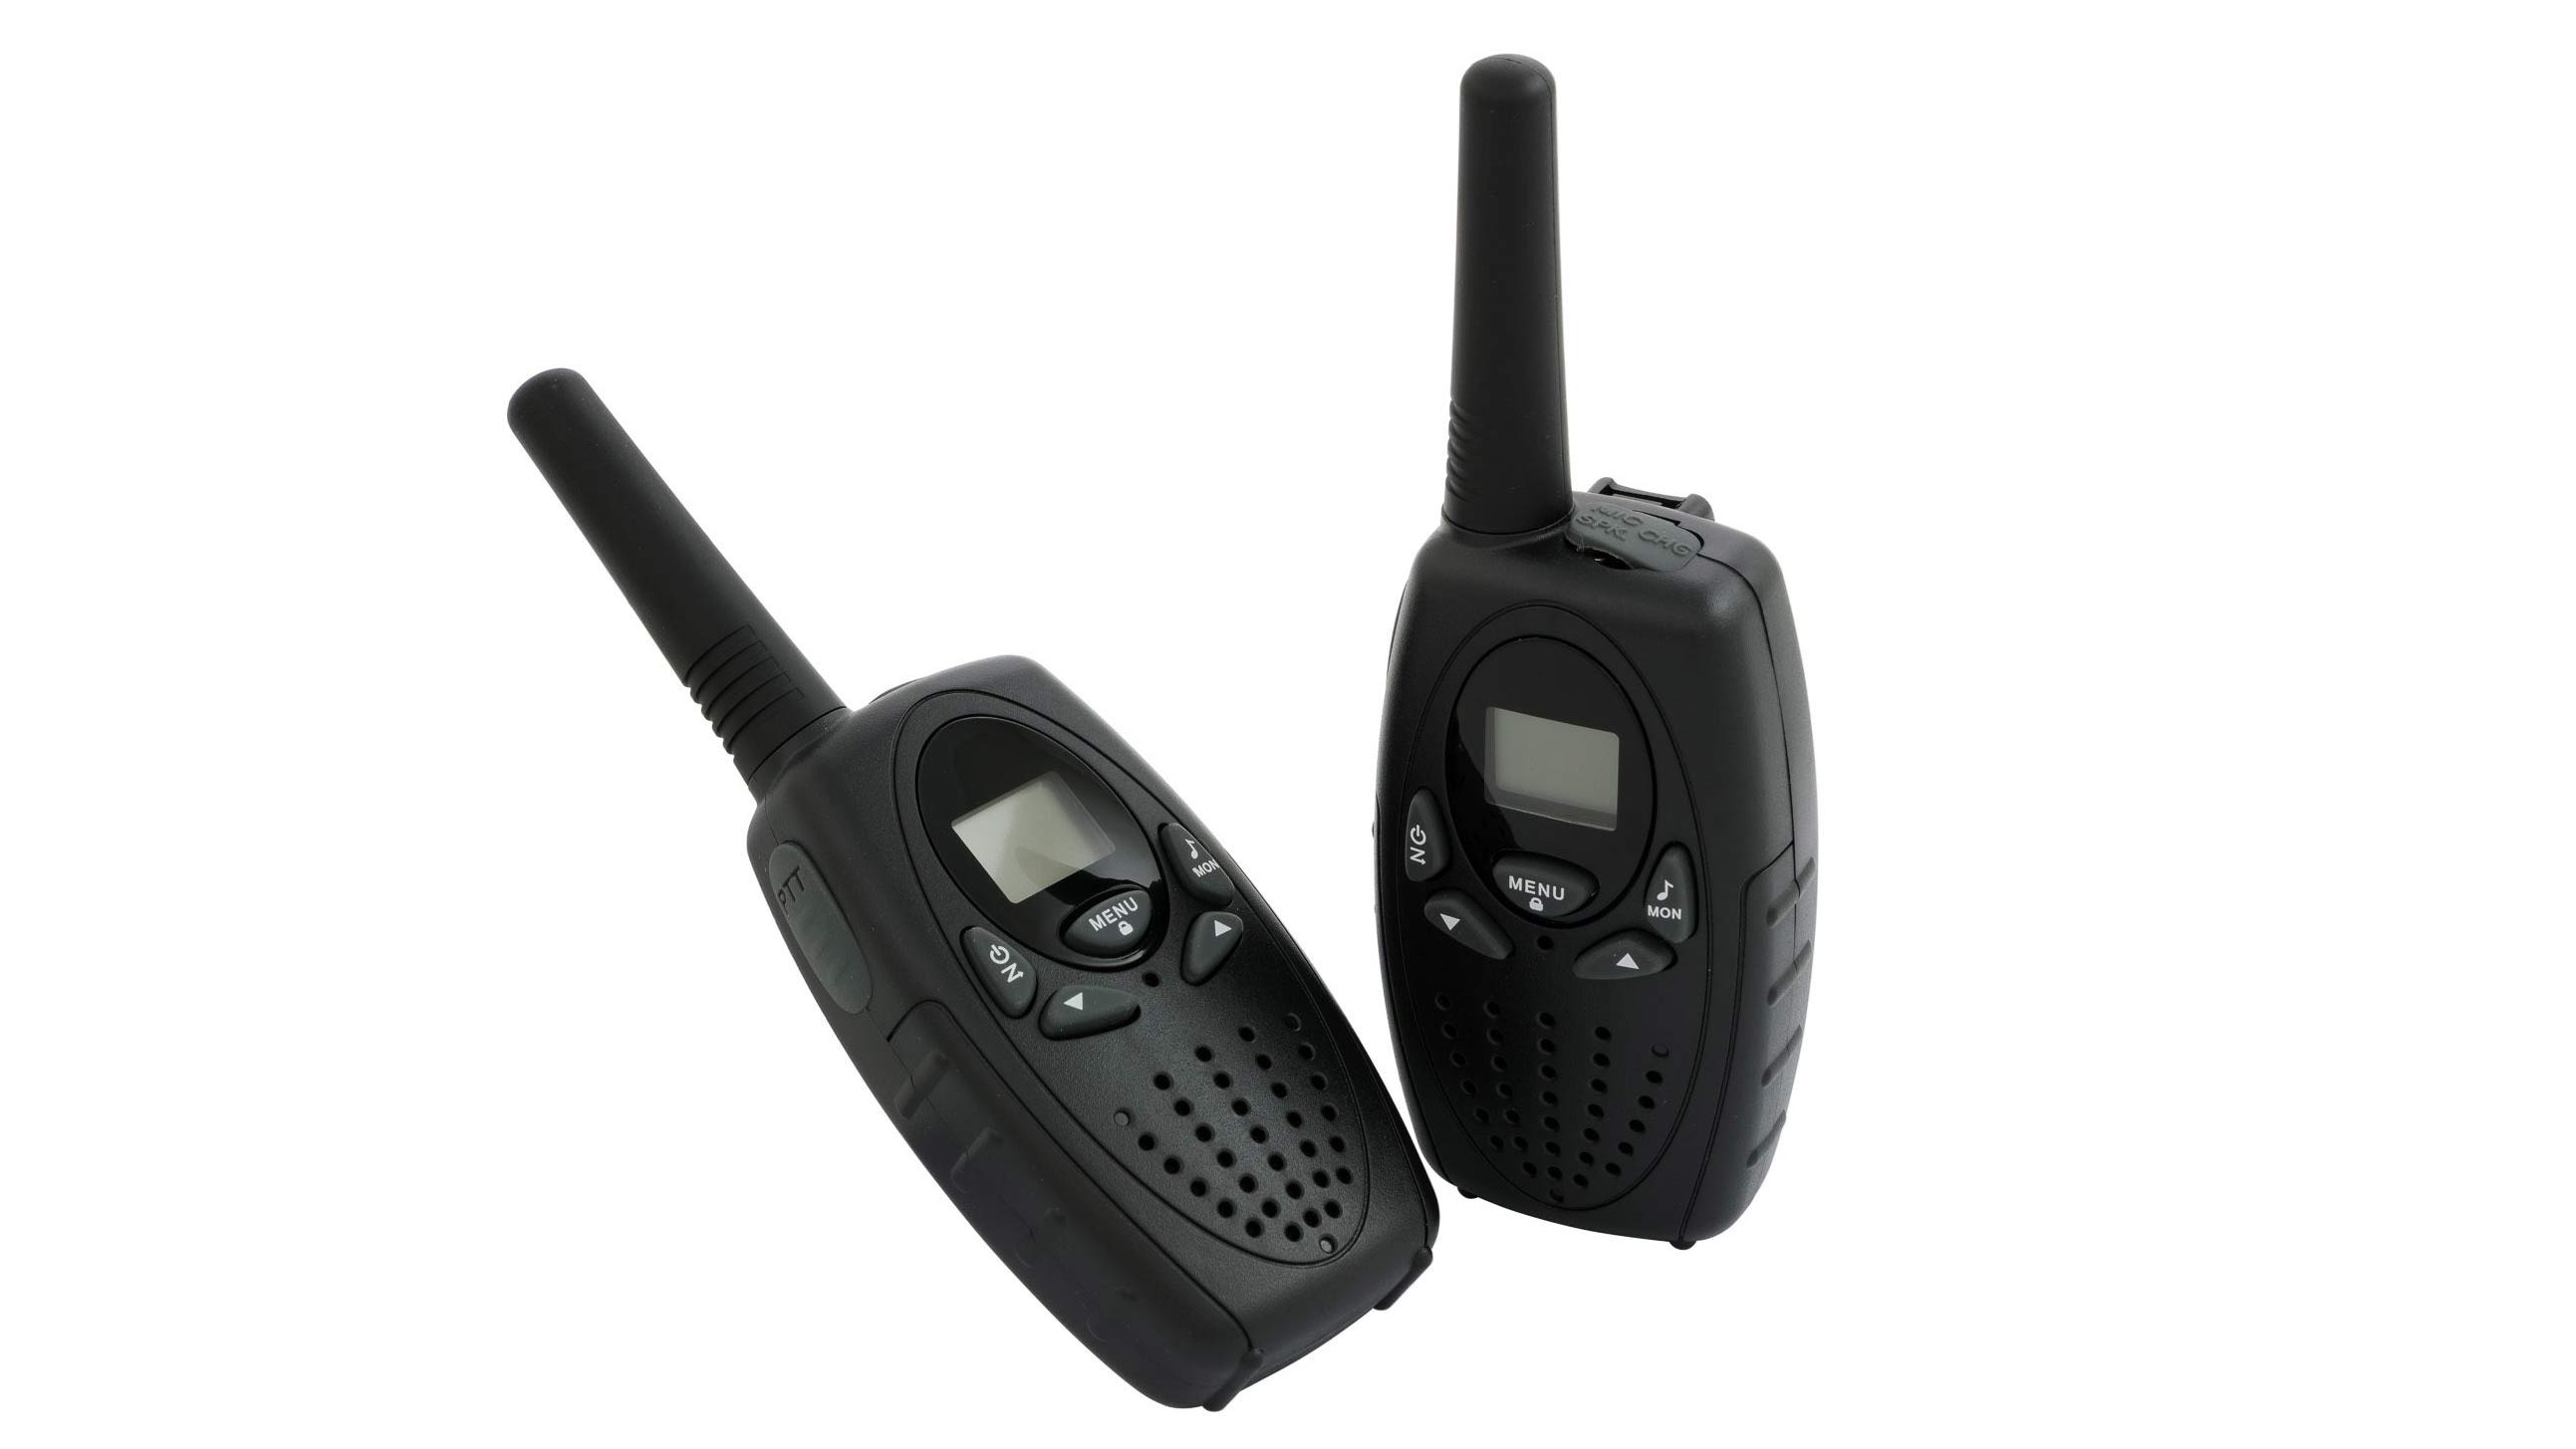 A pair of black walkie-talkies.